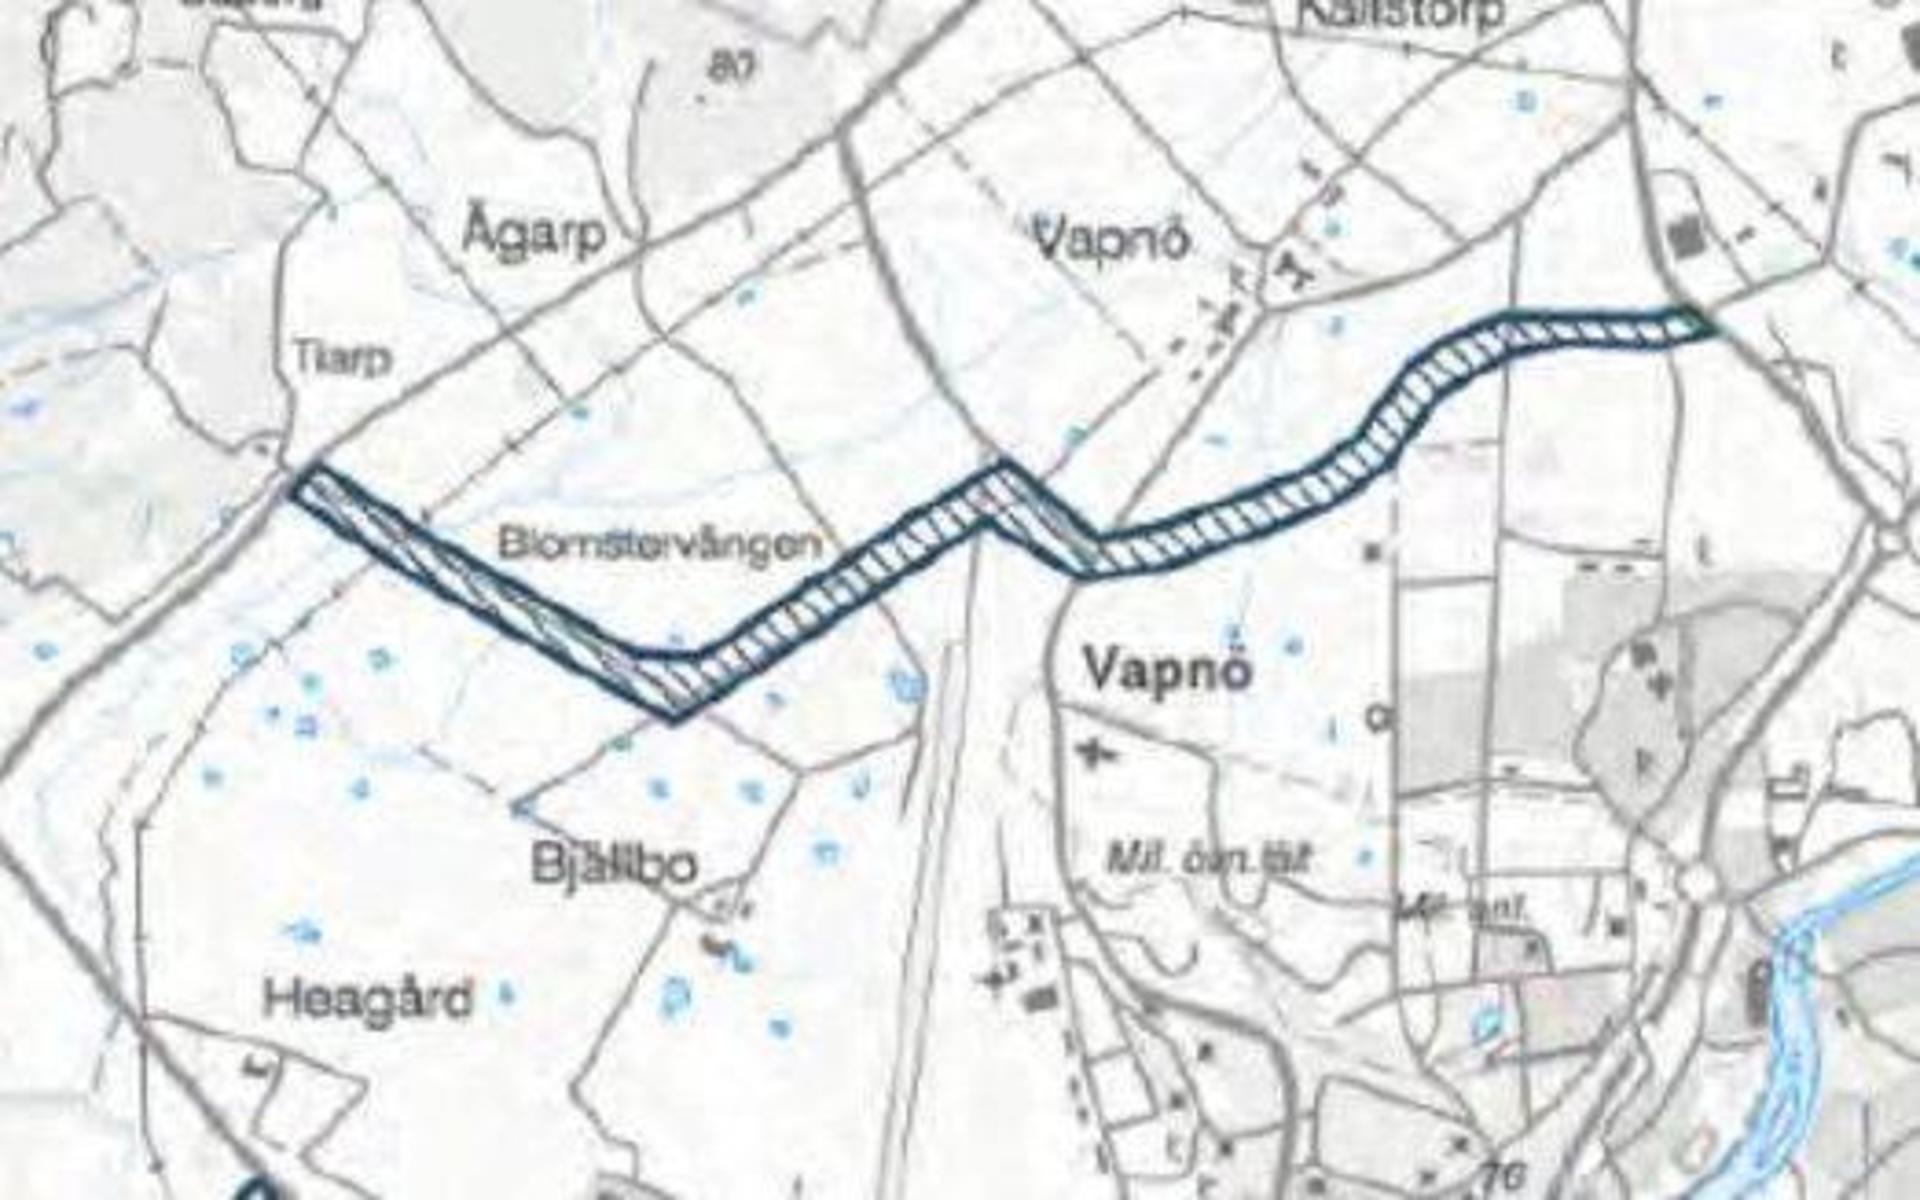 I kommunens transportplan, som just nu är ute på samråd, finns en utbyggnad av vägen mellan Sofieberg och Tiarpsvägen med, kallat Nordvästpassagen. Däremot finns inga planer på att bredda själva Tiarpsvägen enligt politikerna.